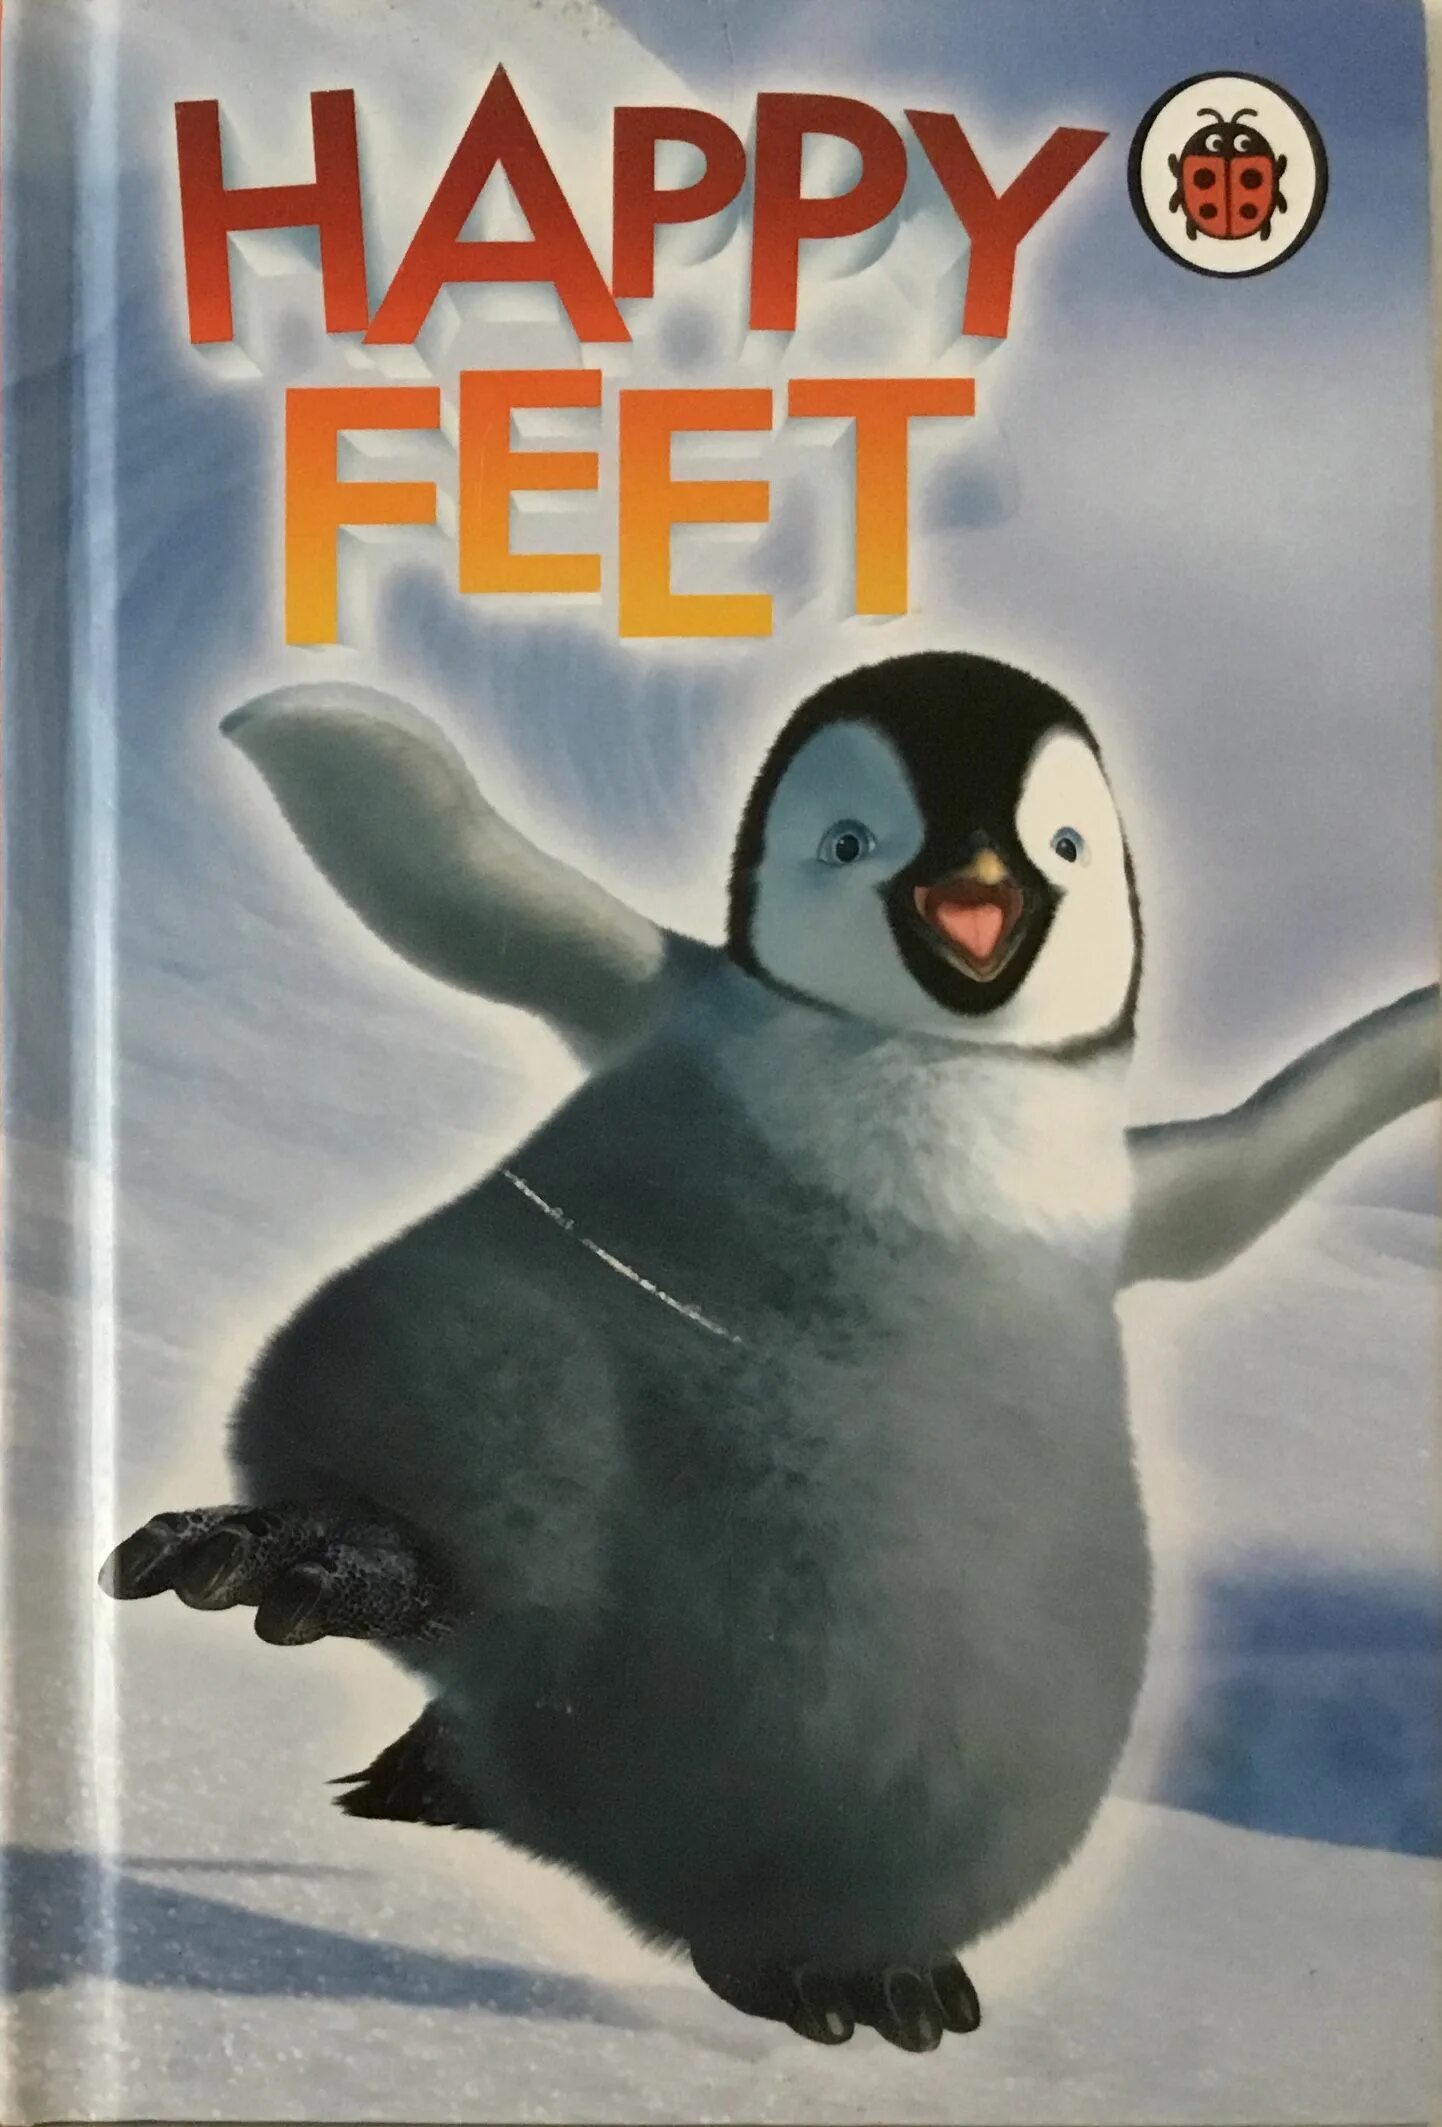 Happy feet. Happy feet 2006. Happy feet DVD.